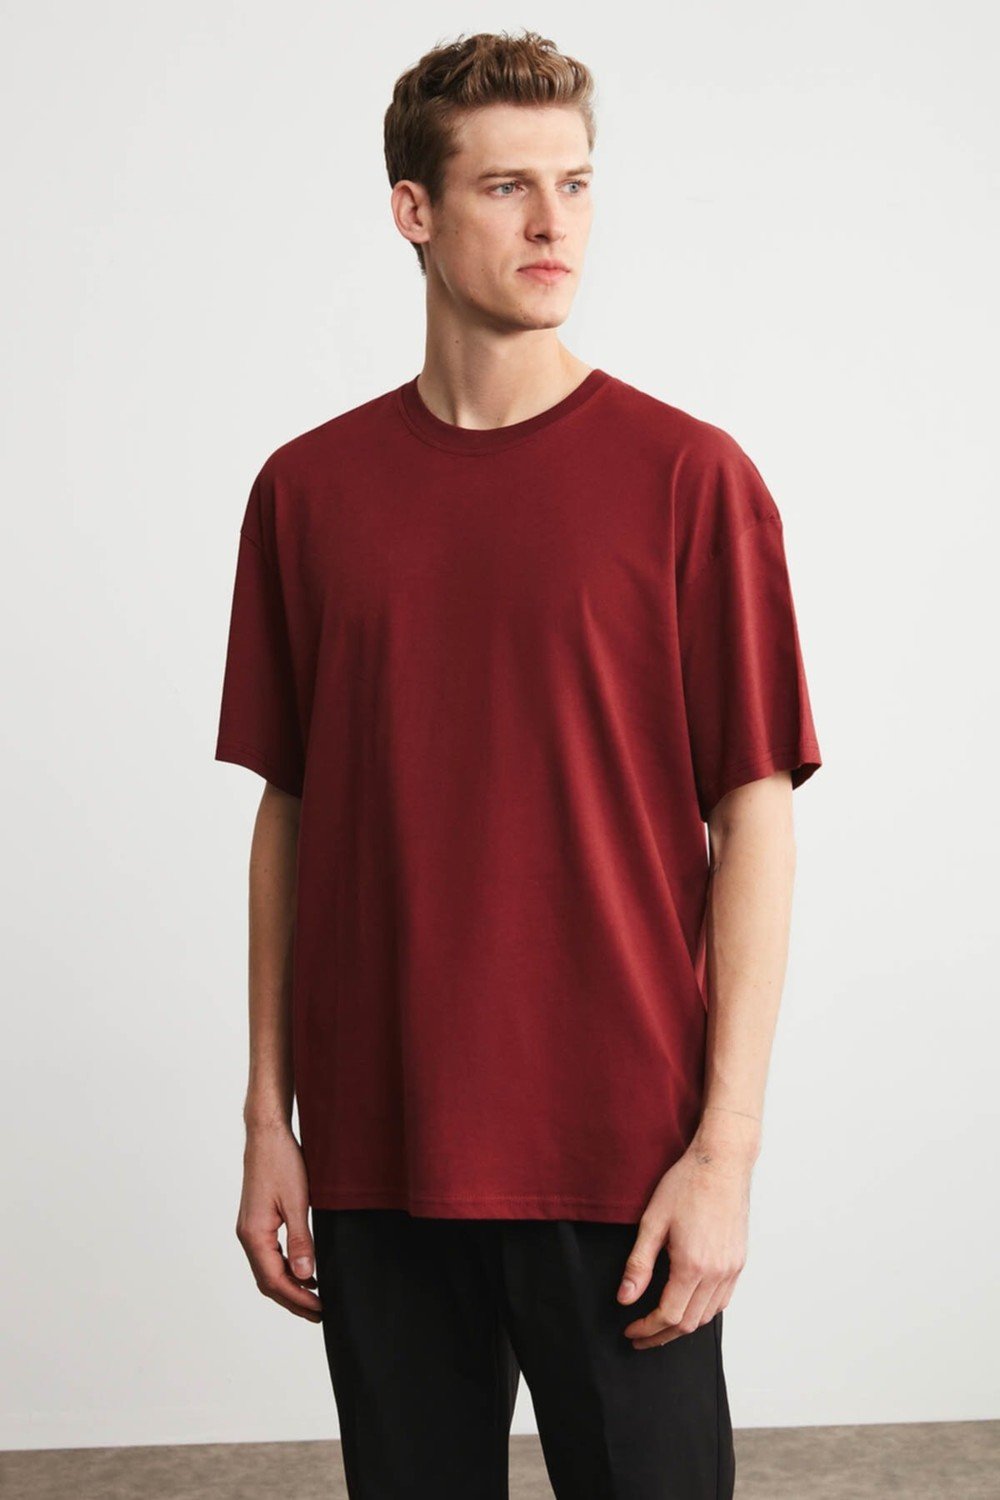 GRIMELANGE T-Shirt - Burgundy - Oversize